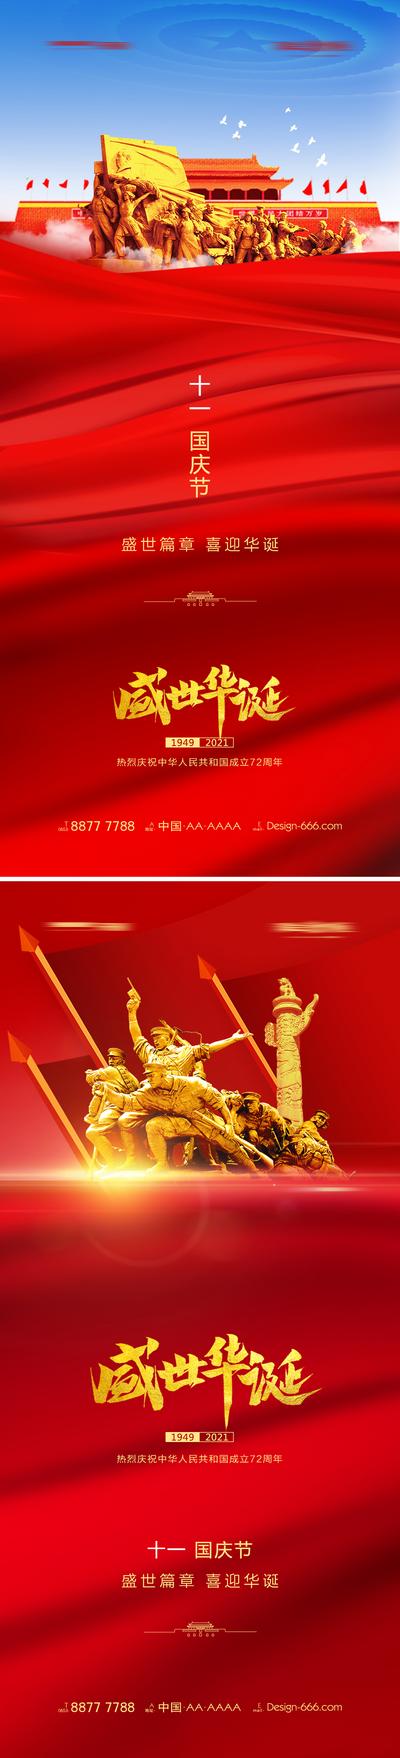 南门网 十一国庆节创意海报系列